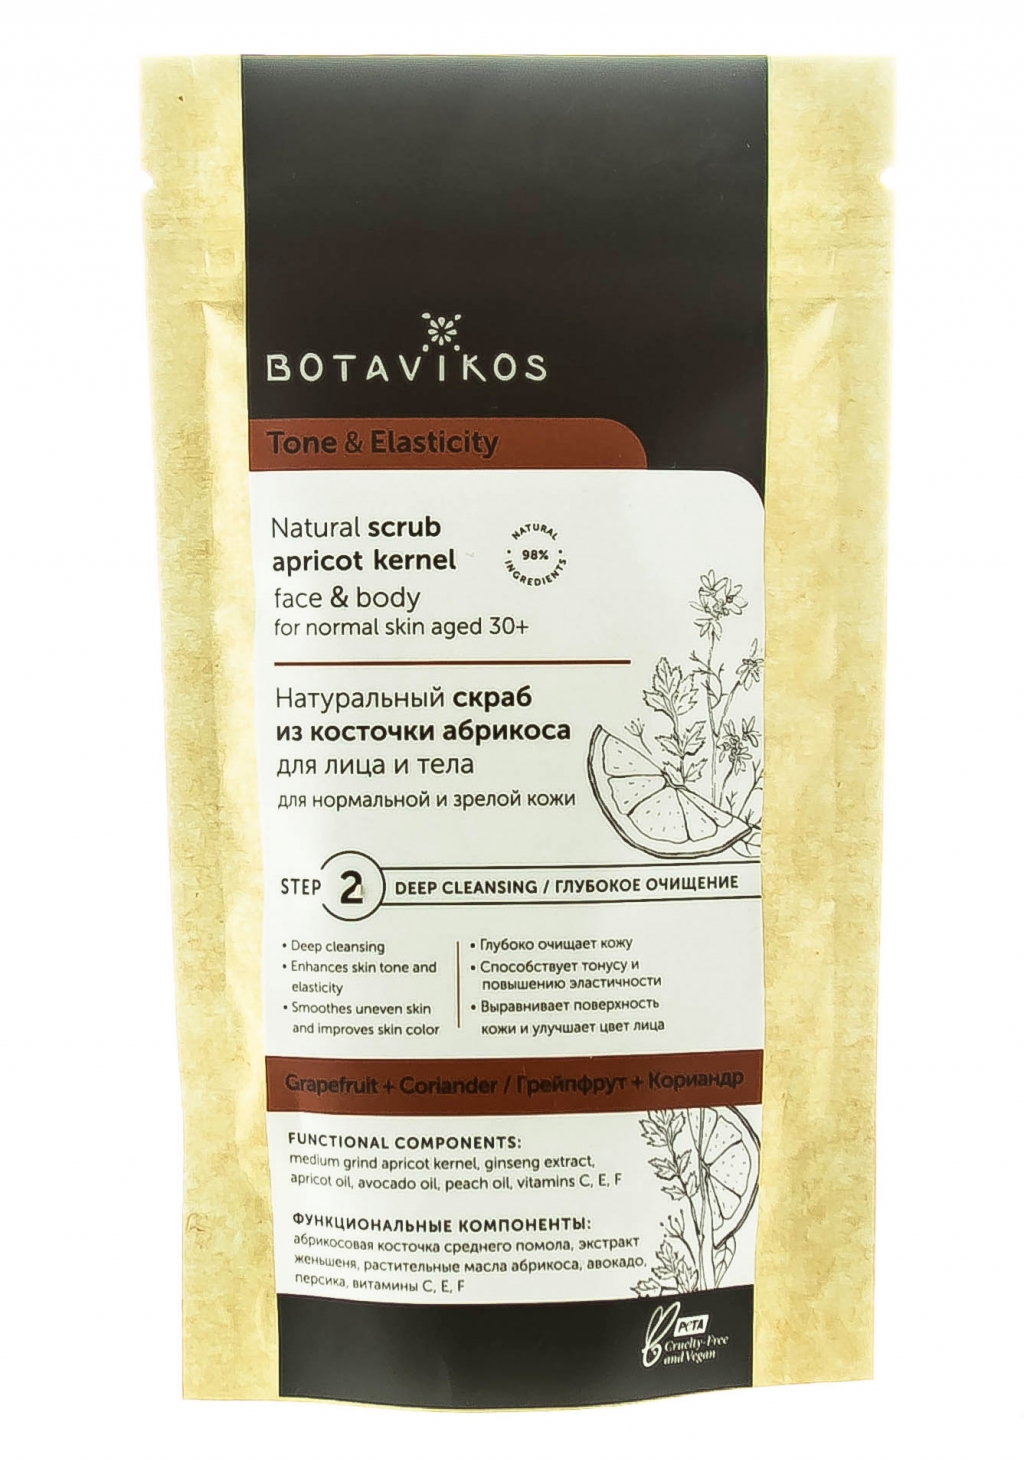 Botavikos Сухой скраб для нормальной и зрелой кожи, 100 г (Botavikos, Для лица)